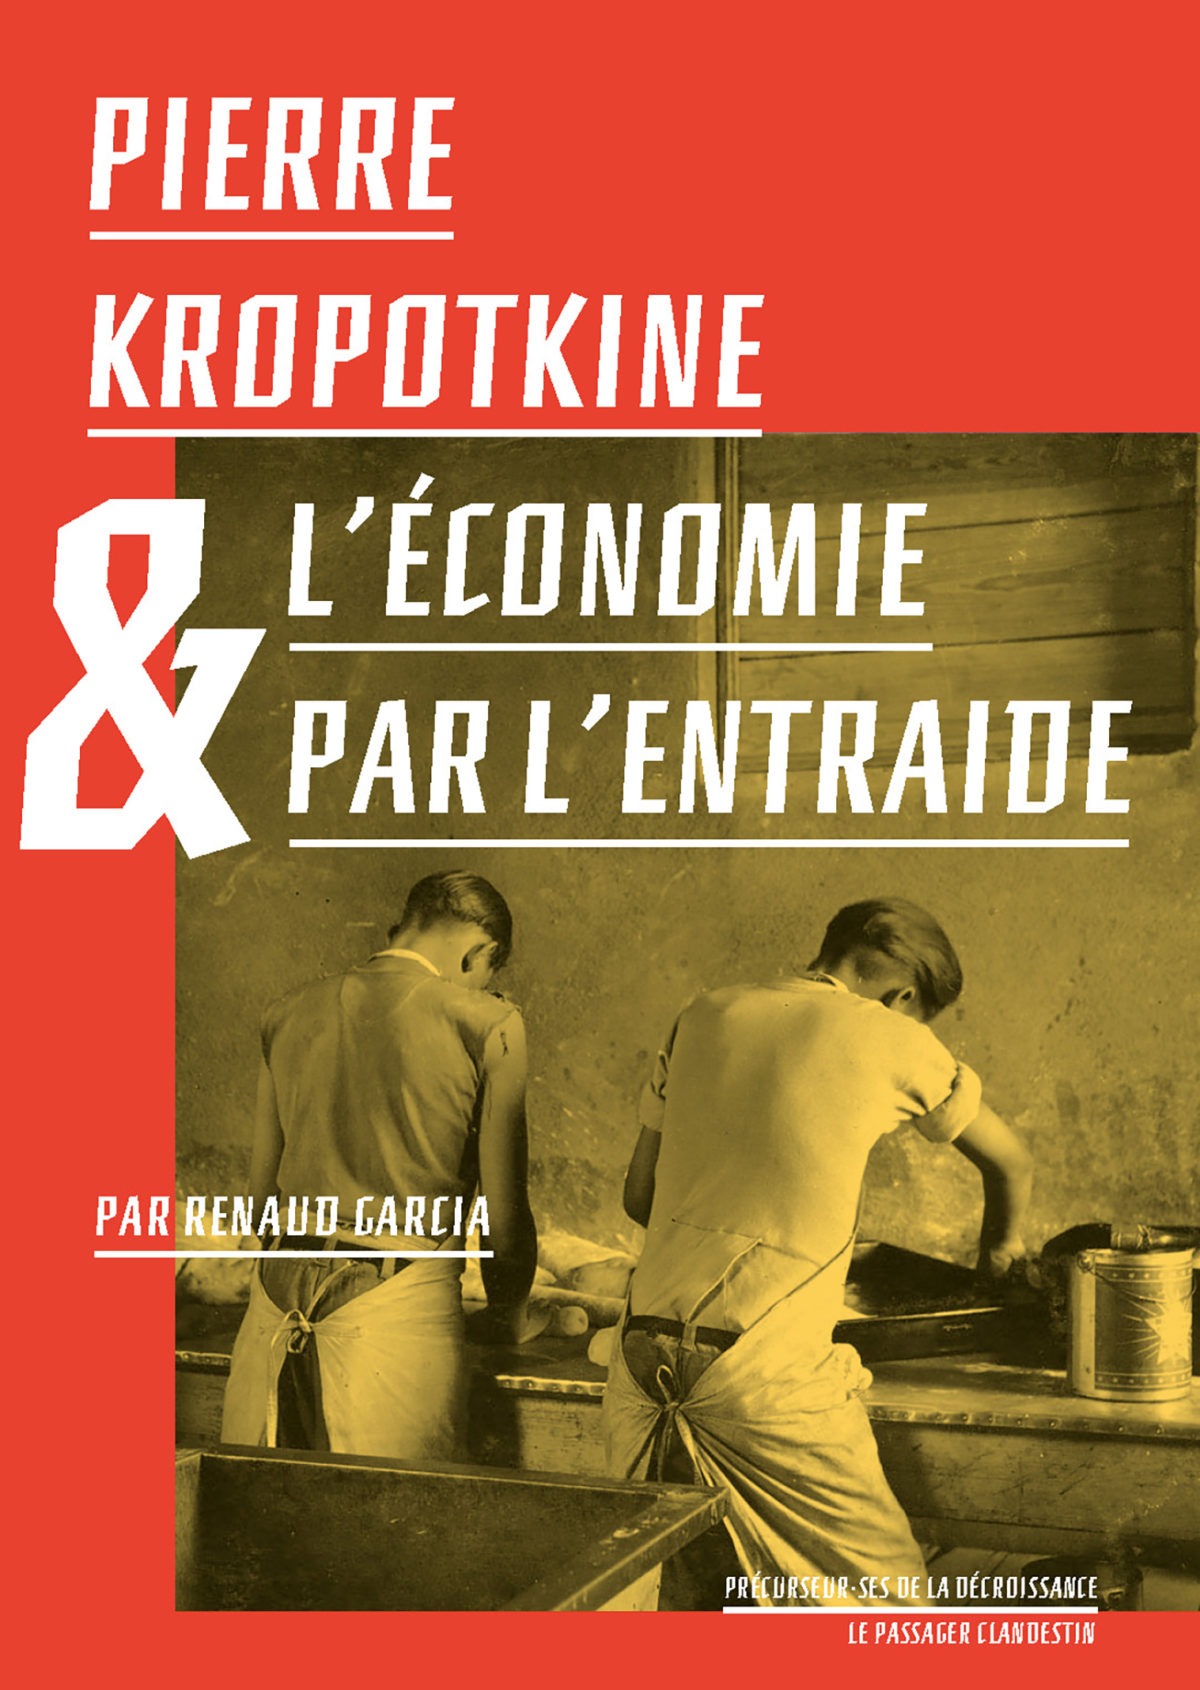 Pierre Kropotkine et l’économie par l'entraide